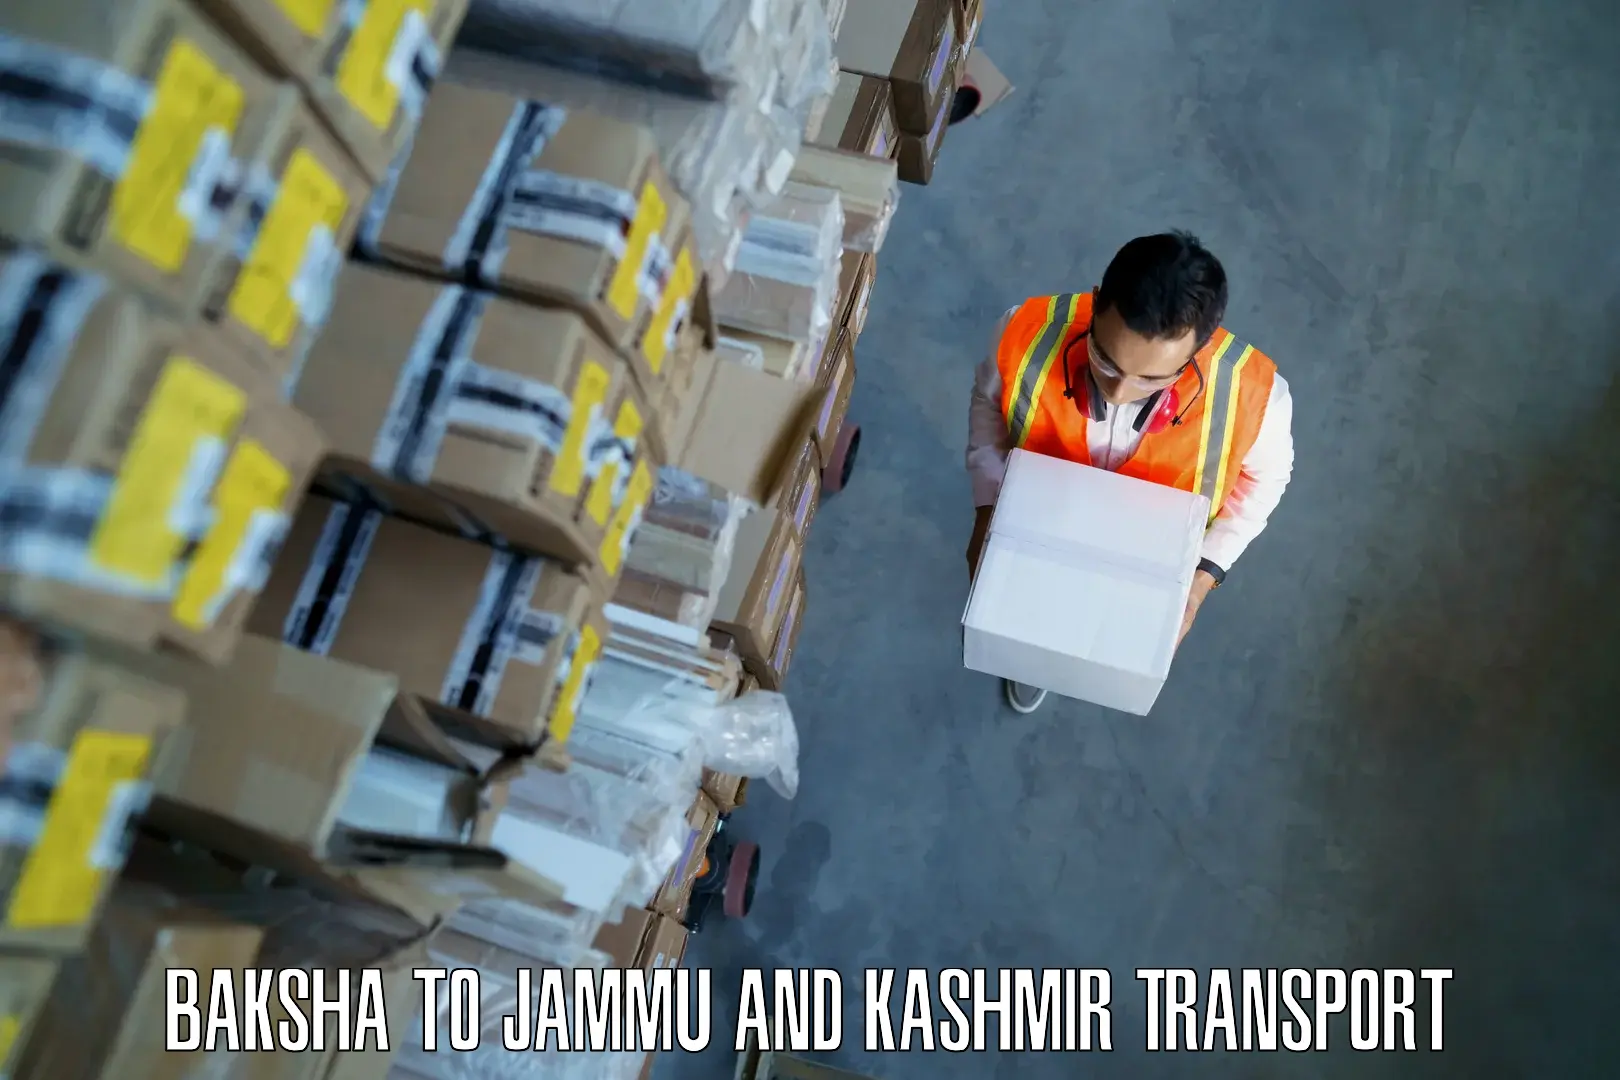 Commercial transport service Baksha to Jammu and Kashmir